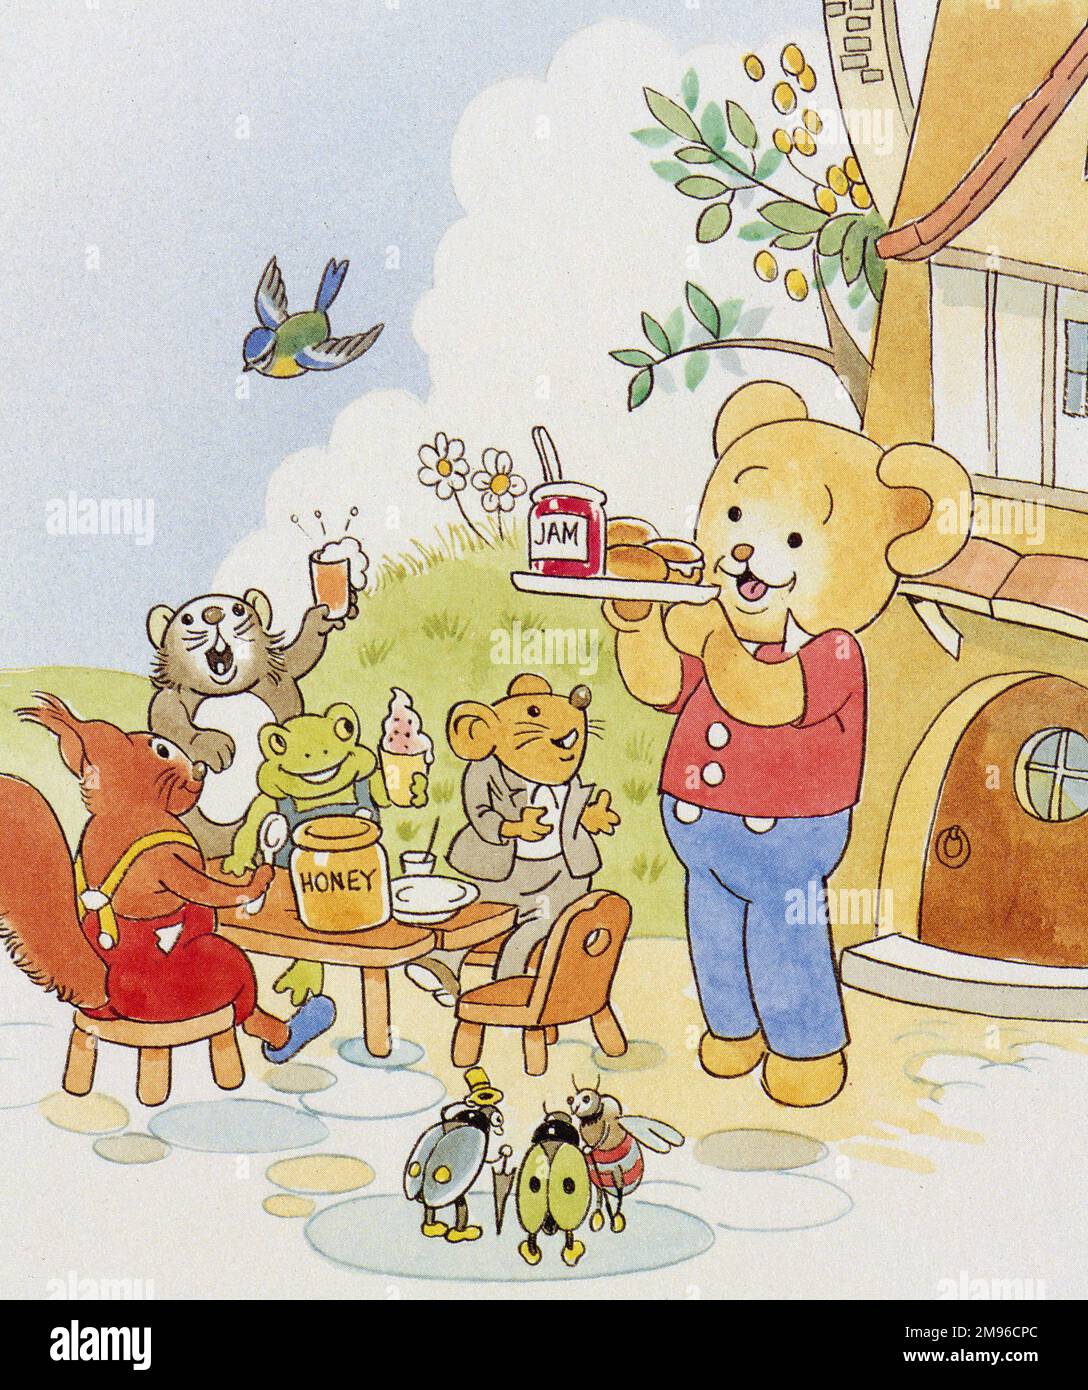 Eine Teeparty für einen Bären und seine Freunde. Der Bär trägt einen Topf Marmelade und ein paar Brötchen auf einem Tablett zu einem Tisch, wo ein Eichhörnchen, ein Frosch und zwei andere Tiere sitzen. Zwei Marienkäfer und eine Biene stehen in der Nähe und sehen erwartungsvoll aus. Stockfoto